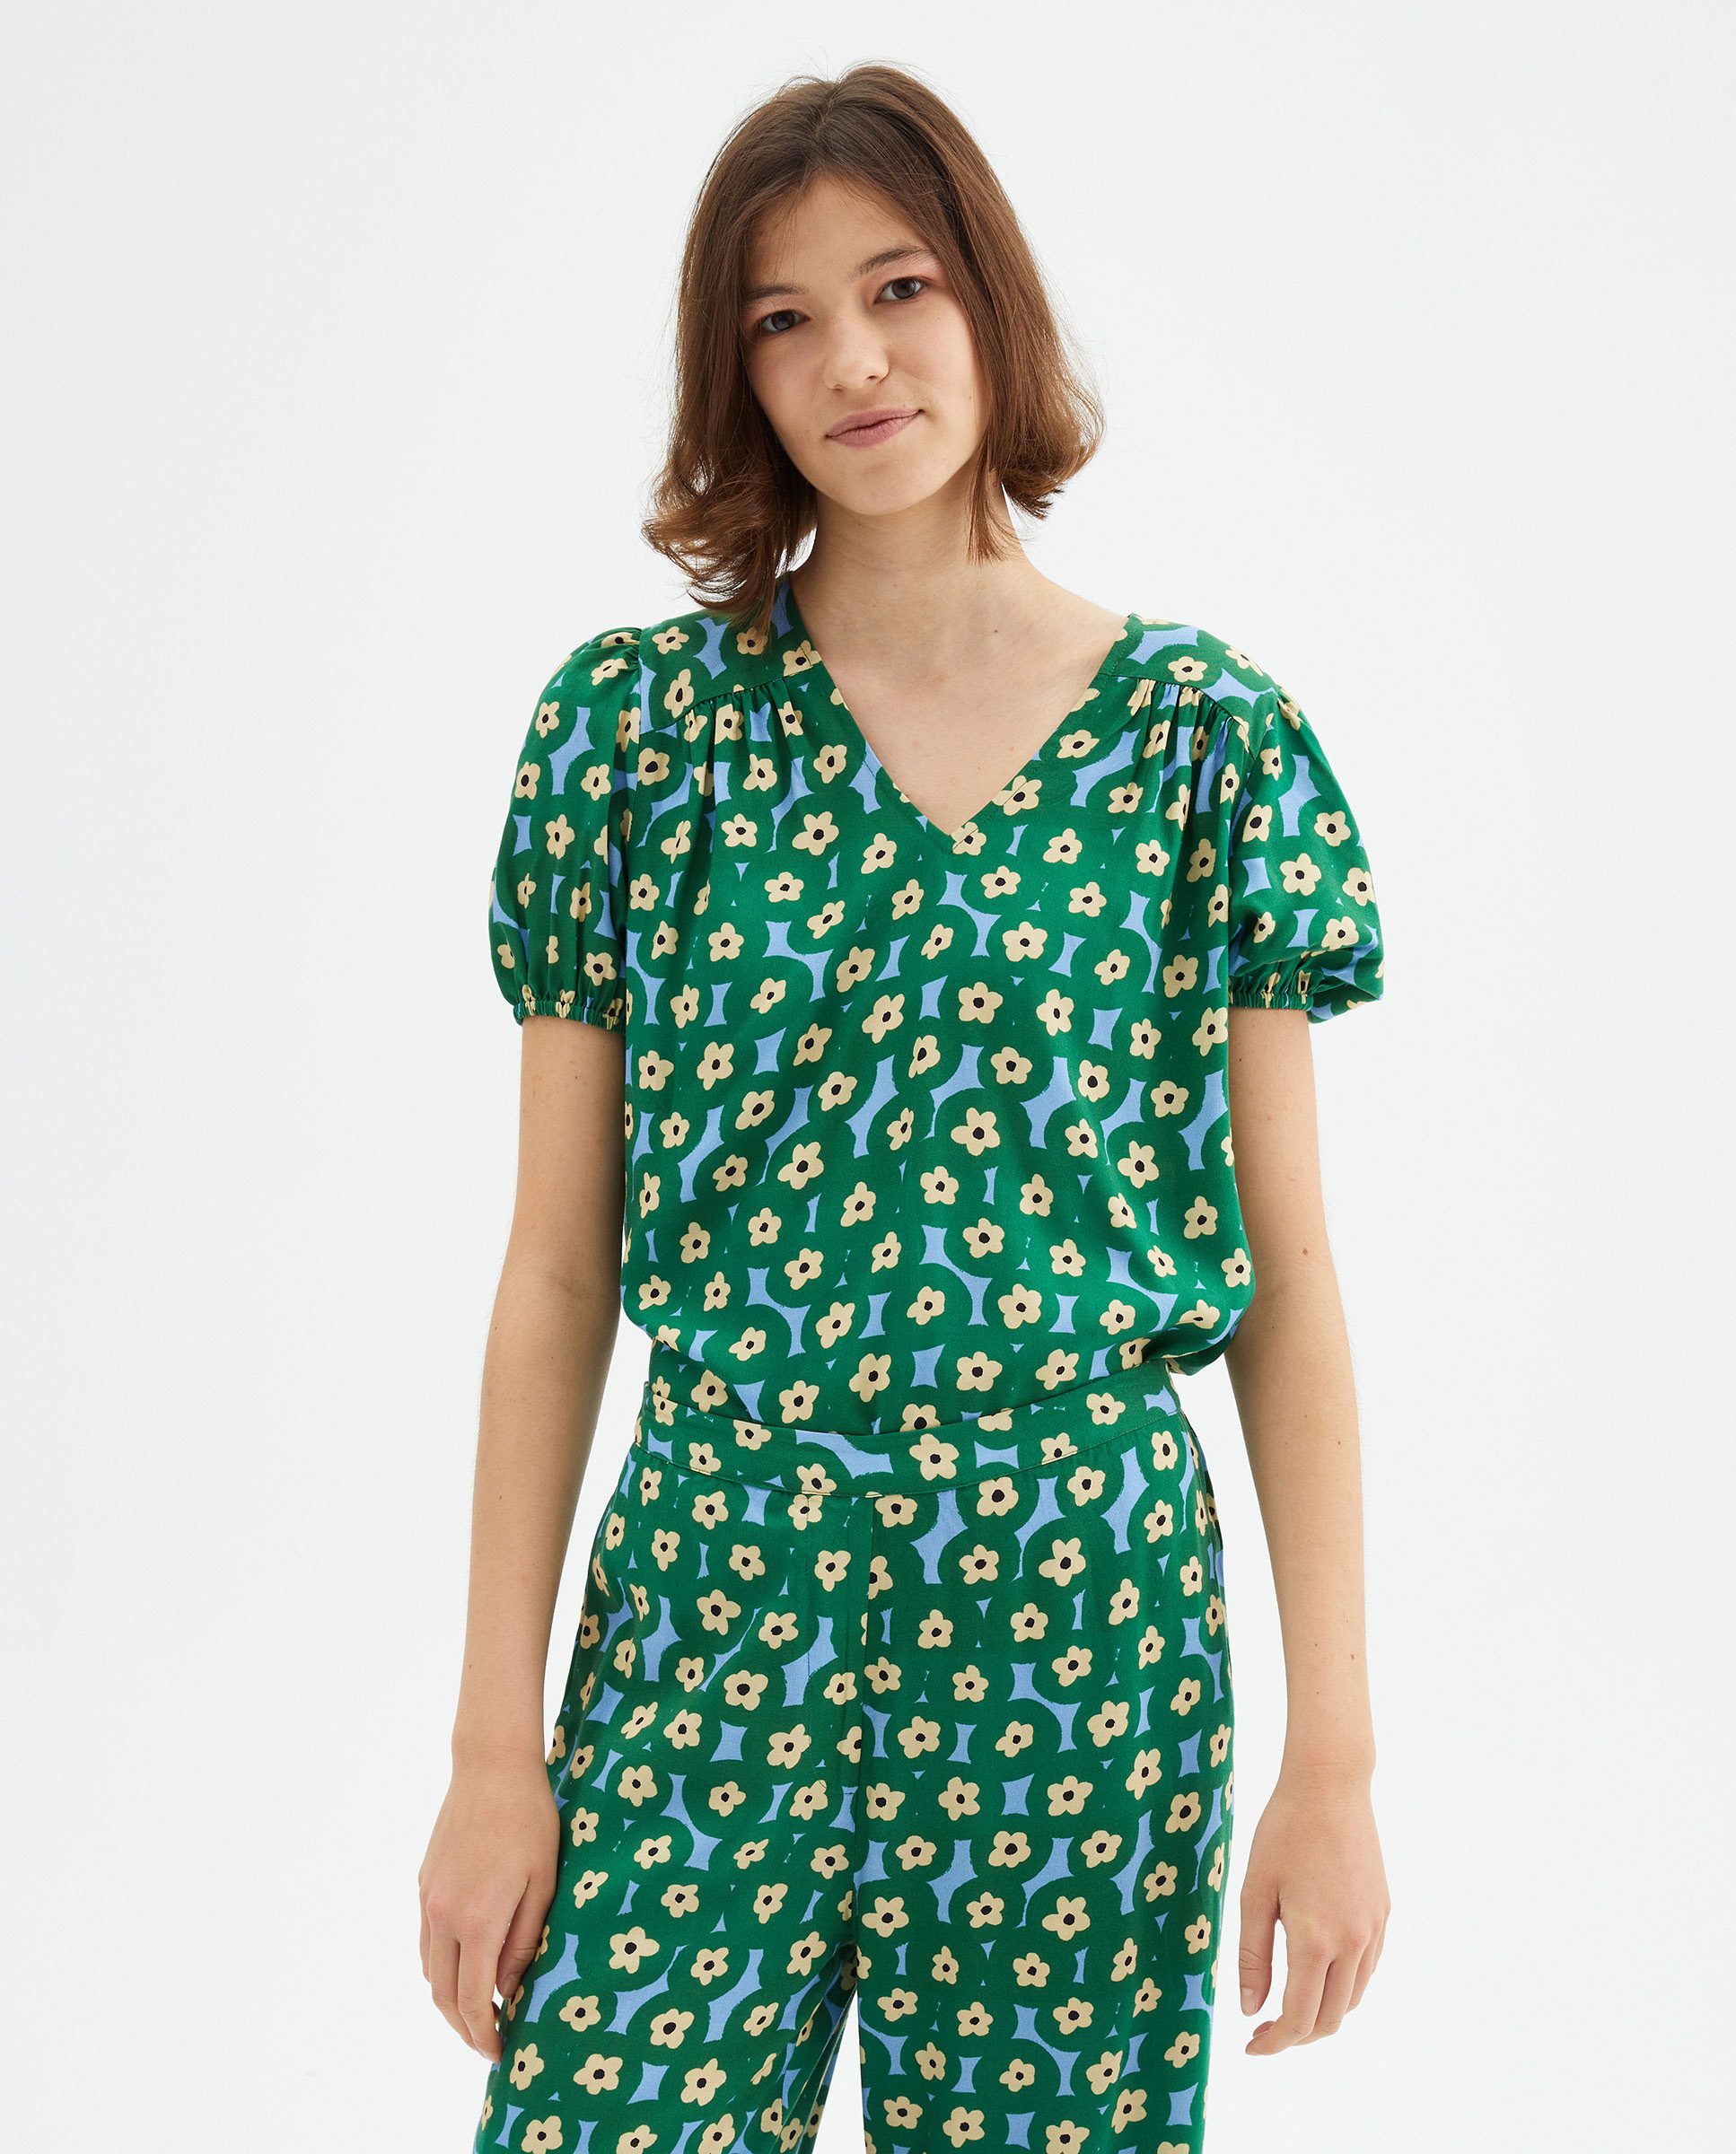 Πράσινη Μπλούζα Με Print Λουλούδια Compania Fantastica